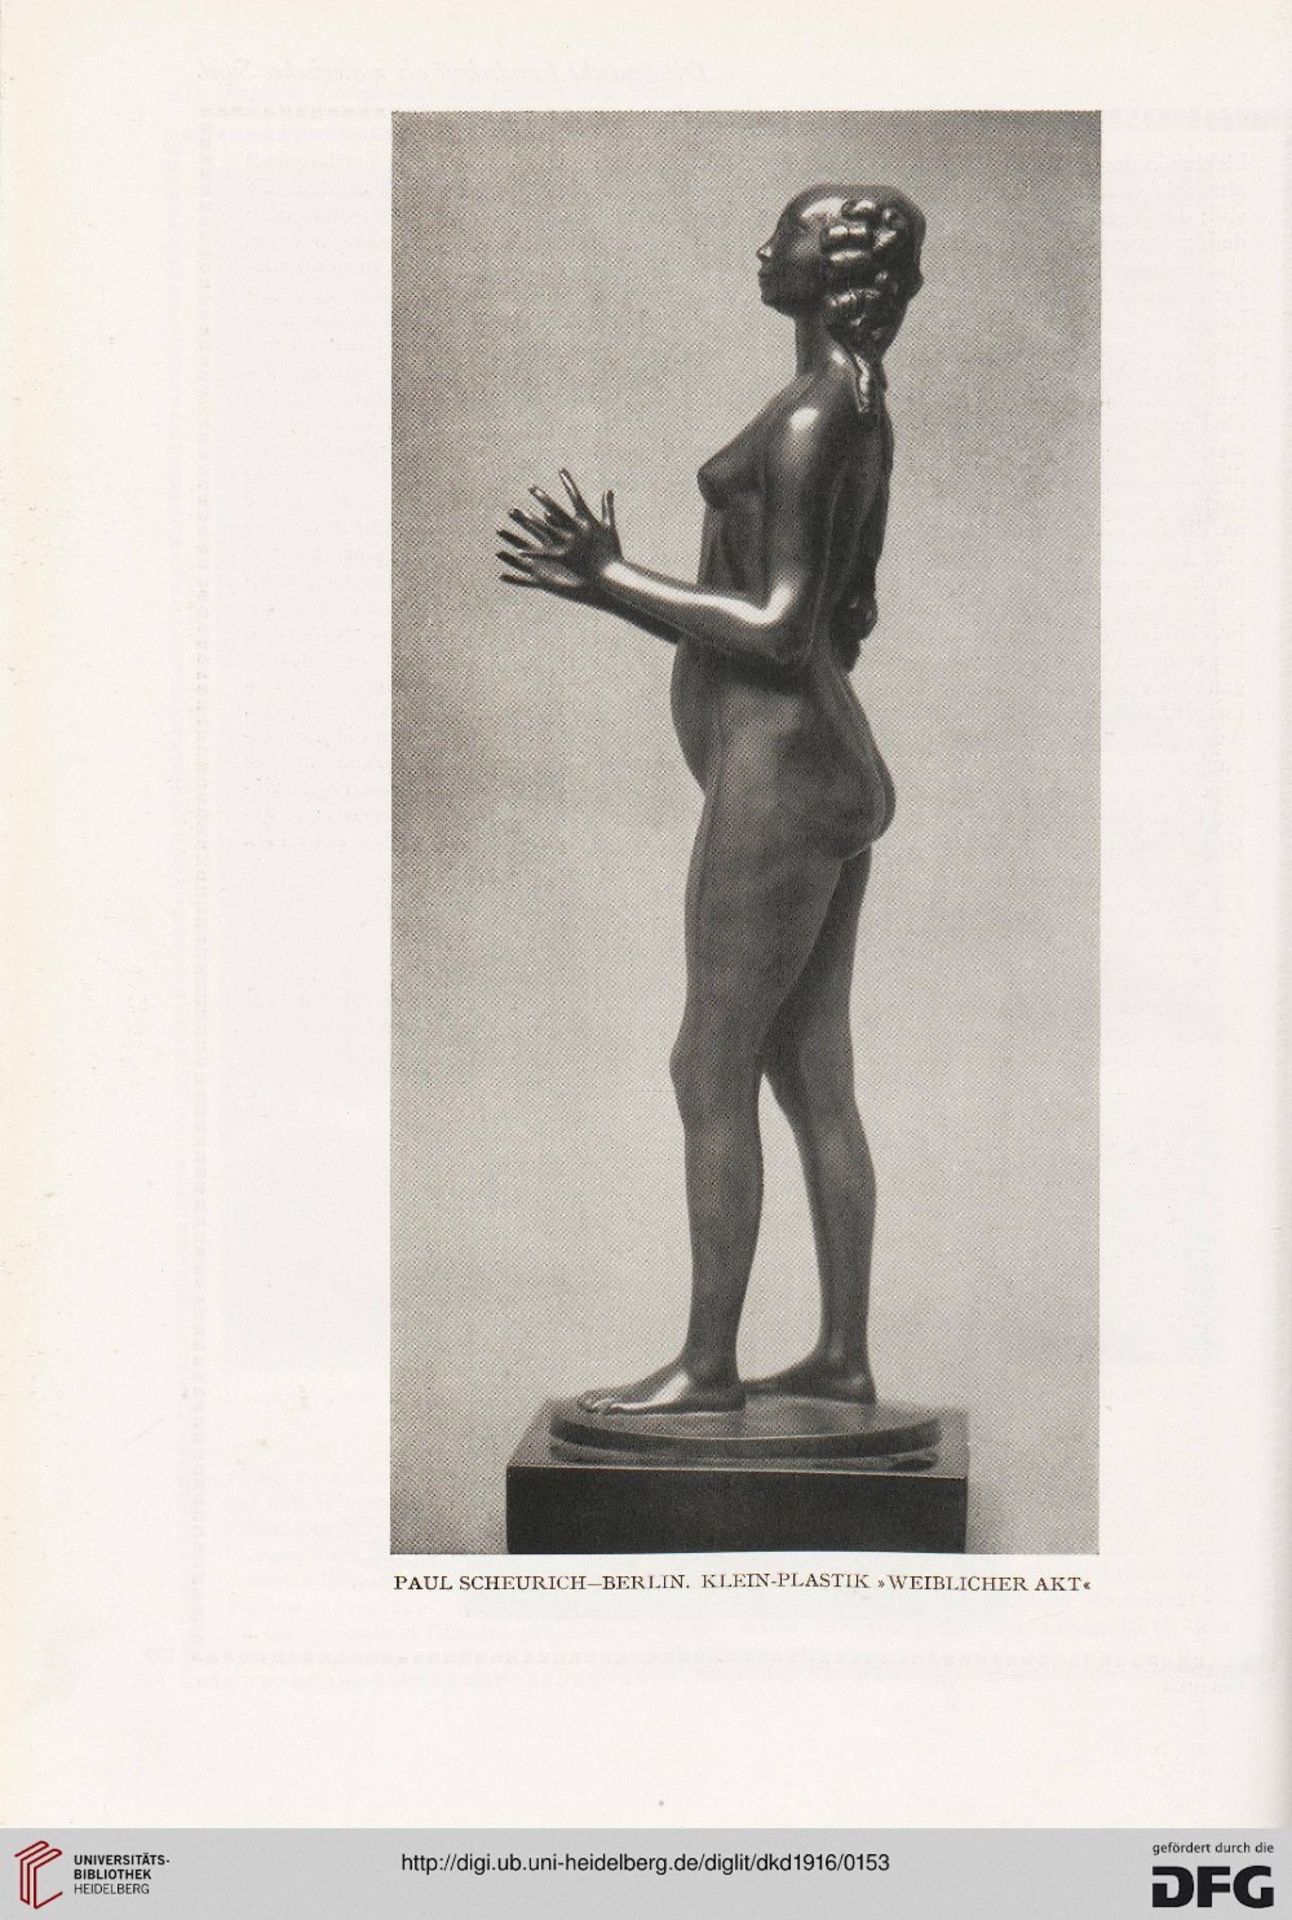 Paul Scheurich (1883-1945): Statuette en bronze repr&#233;sentant une chasseuse nue, circa 1912 ...